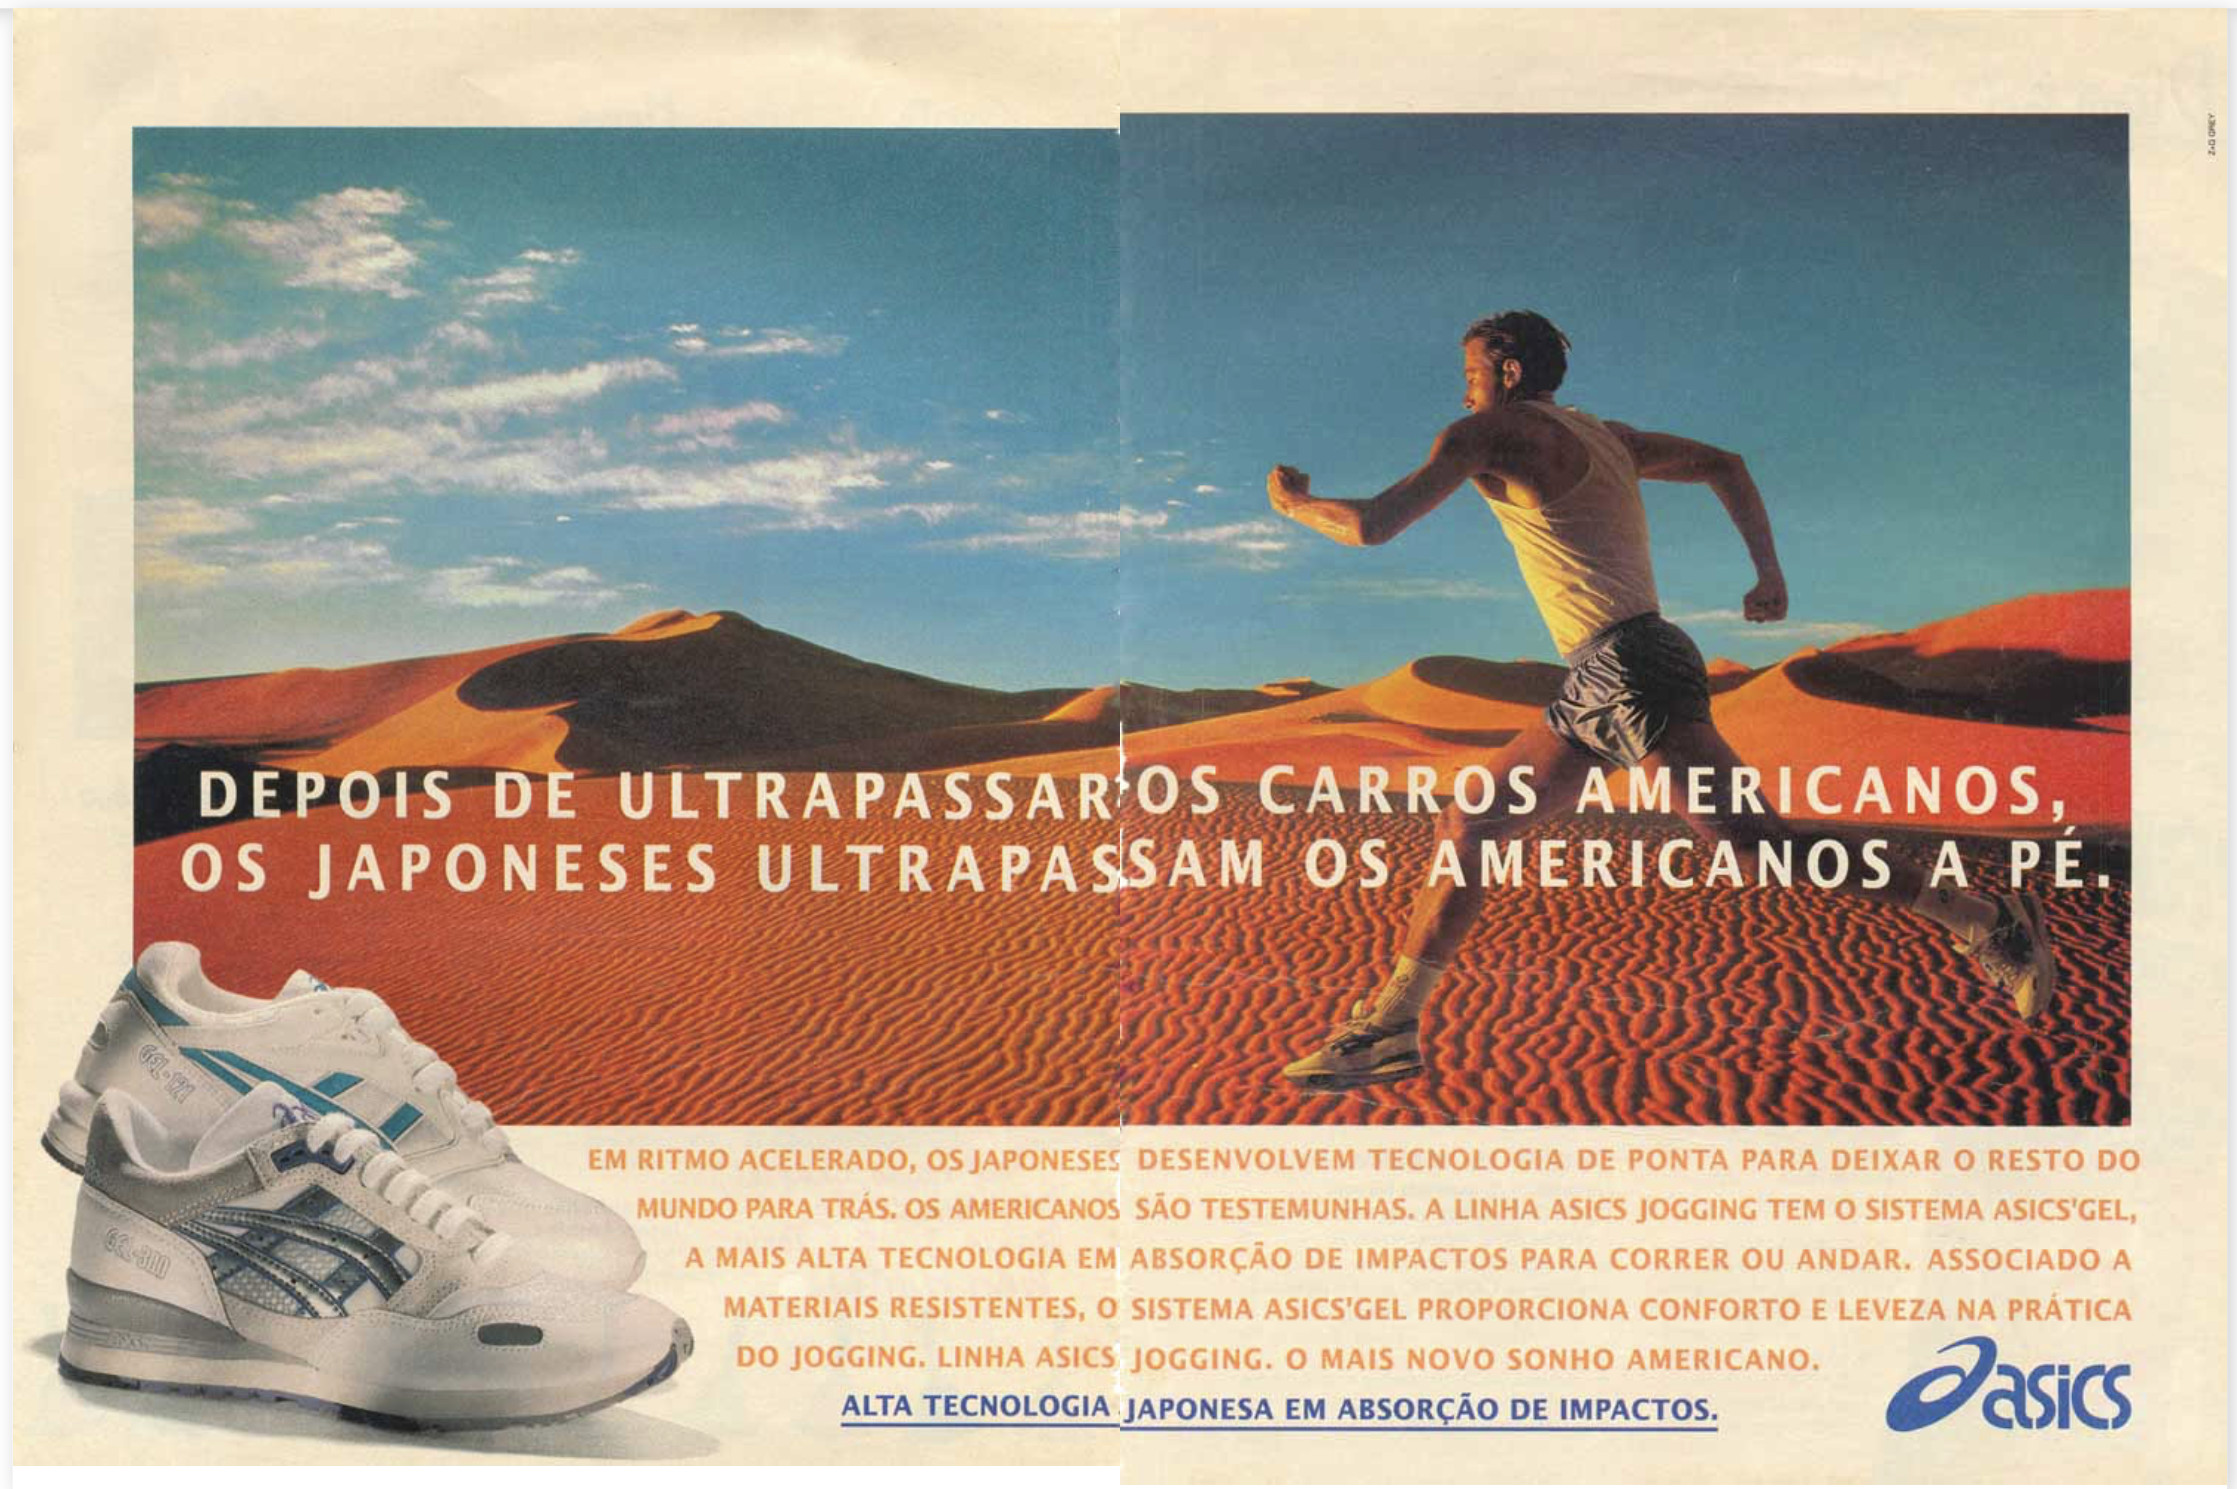 Campanha veiculada em 1993 promovendo a Linha Asics Jogging